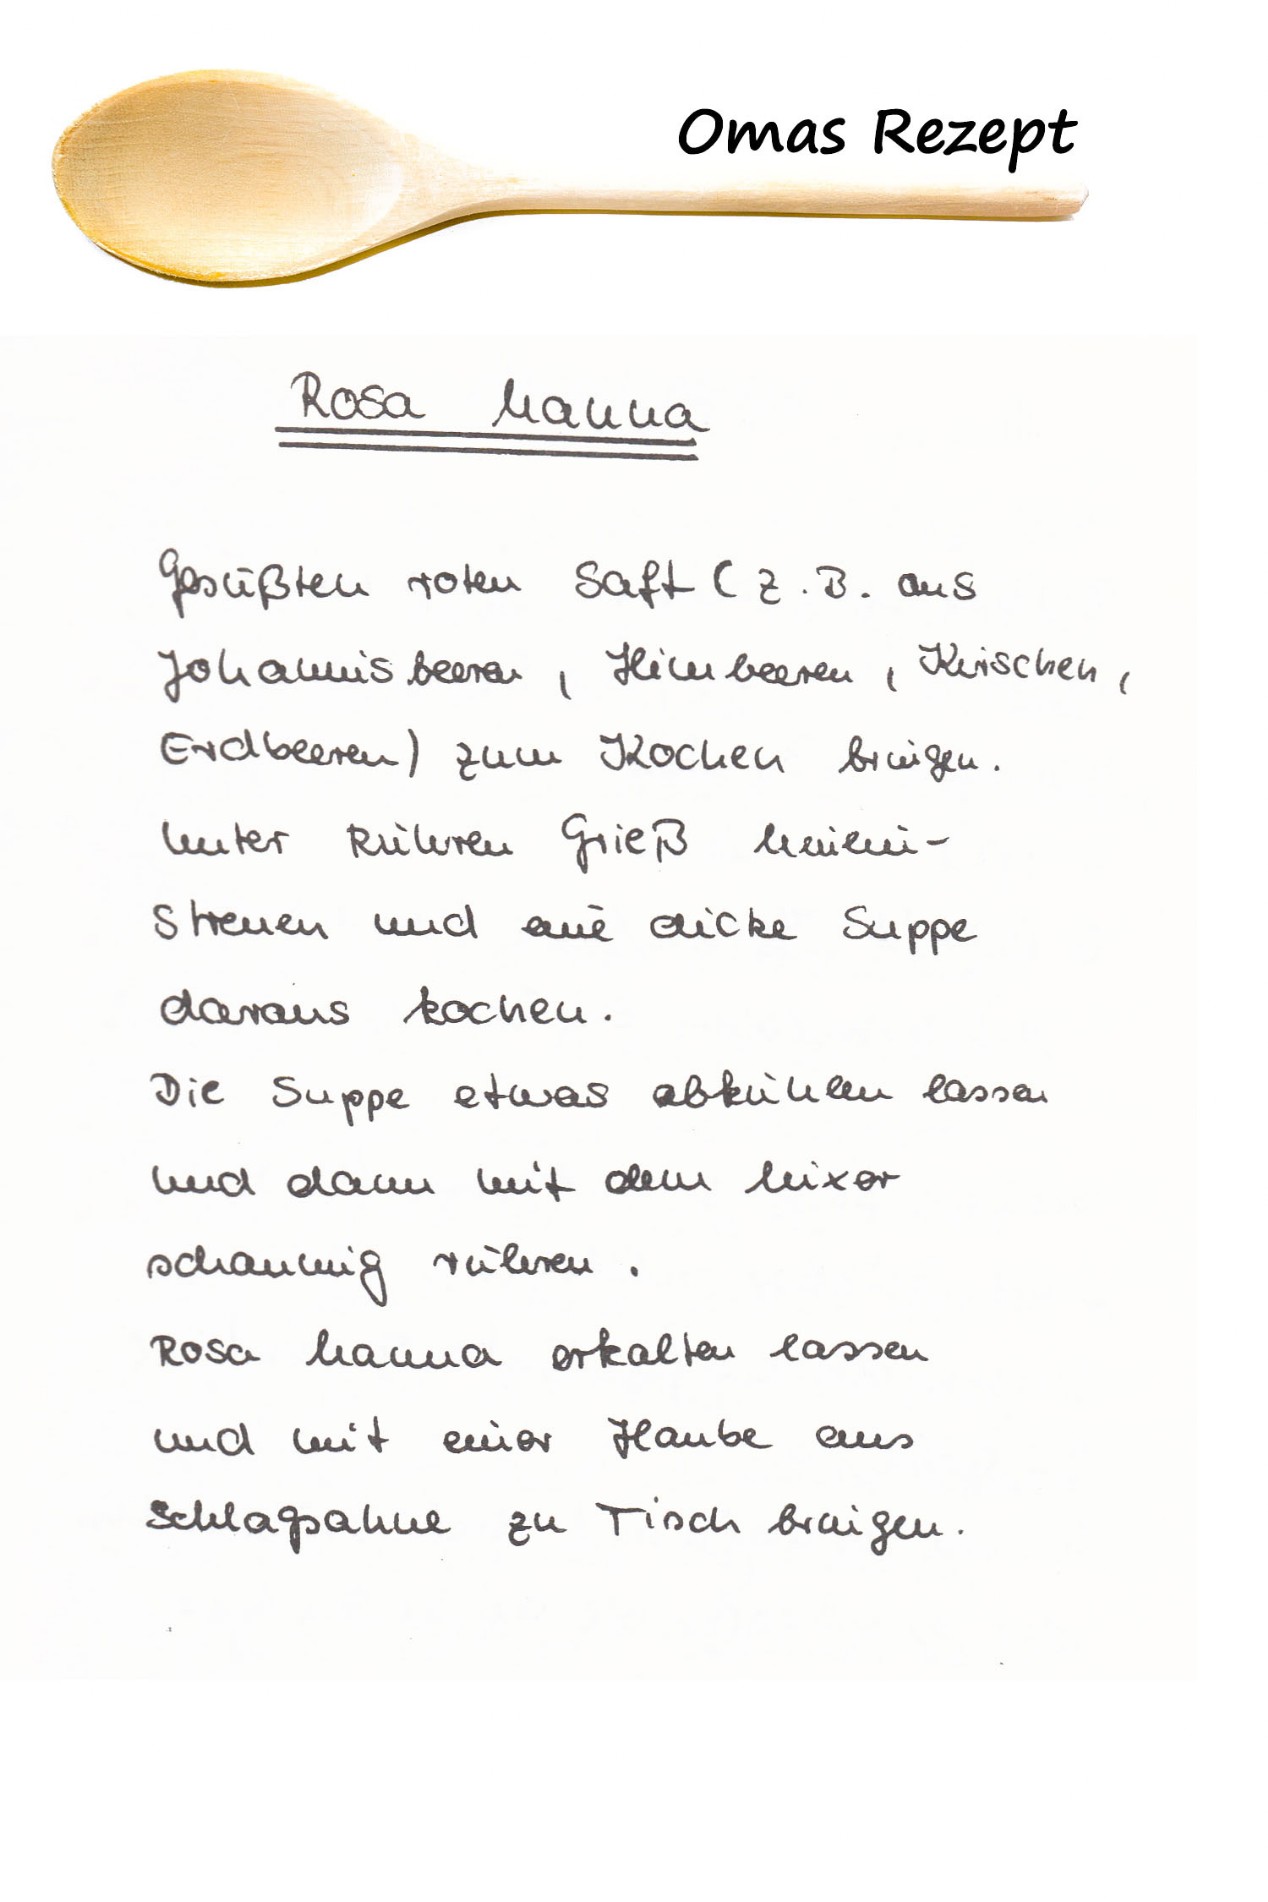 Omas Kochbuch, Desserts und Süßspeisen - Rosa Manna